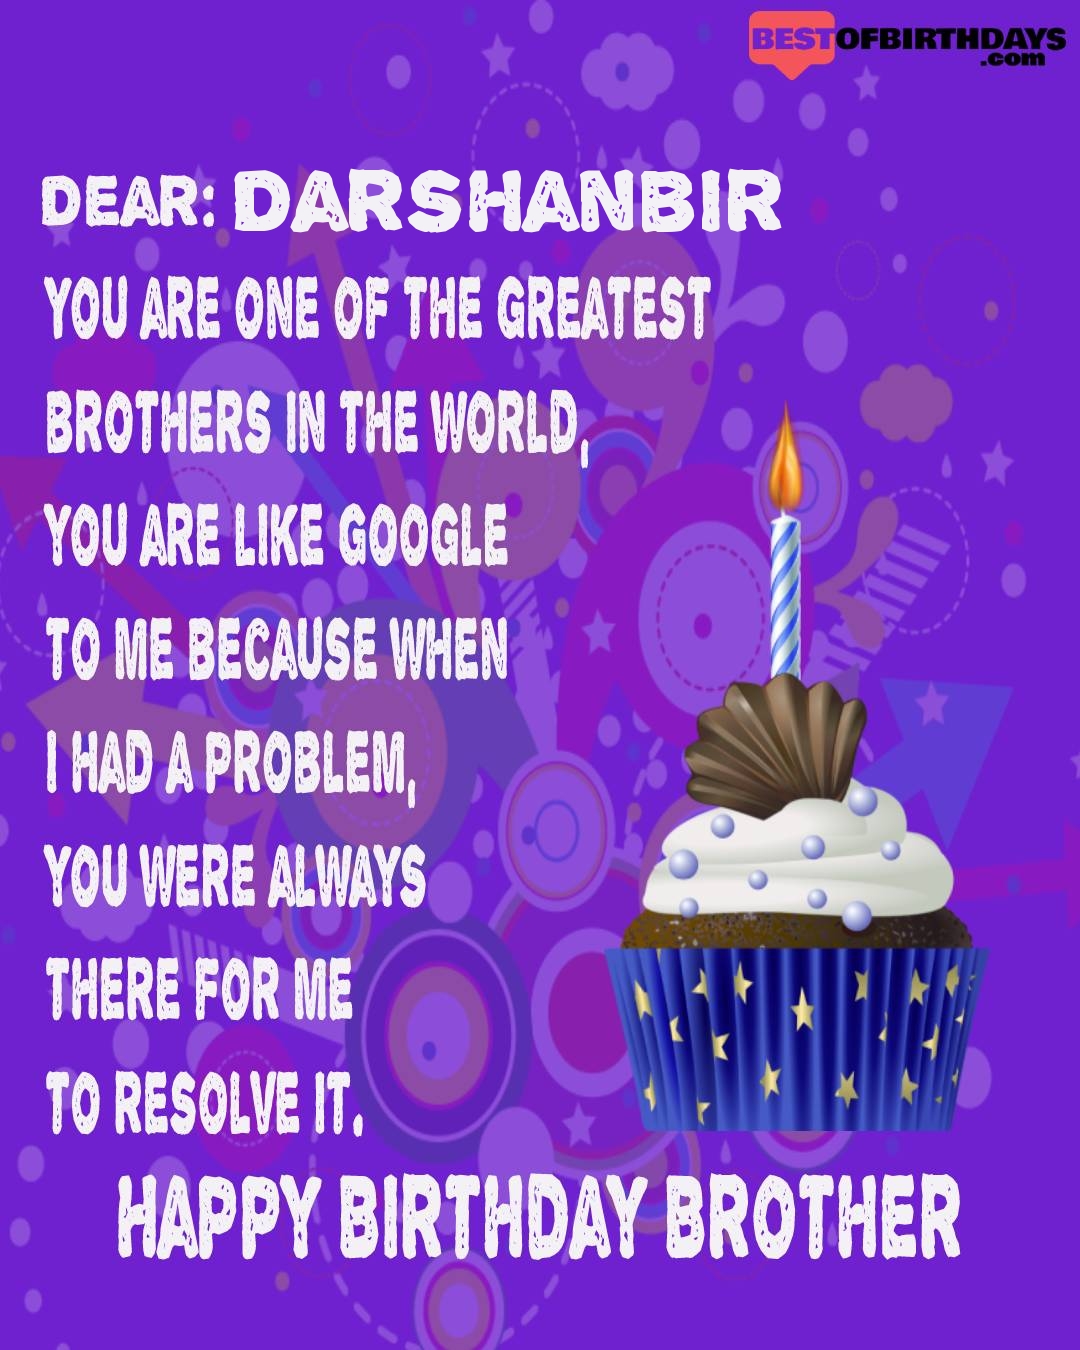 Happy birthday darshanbir bhai brother bro